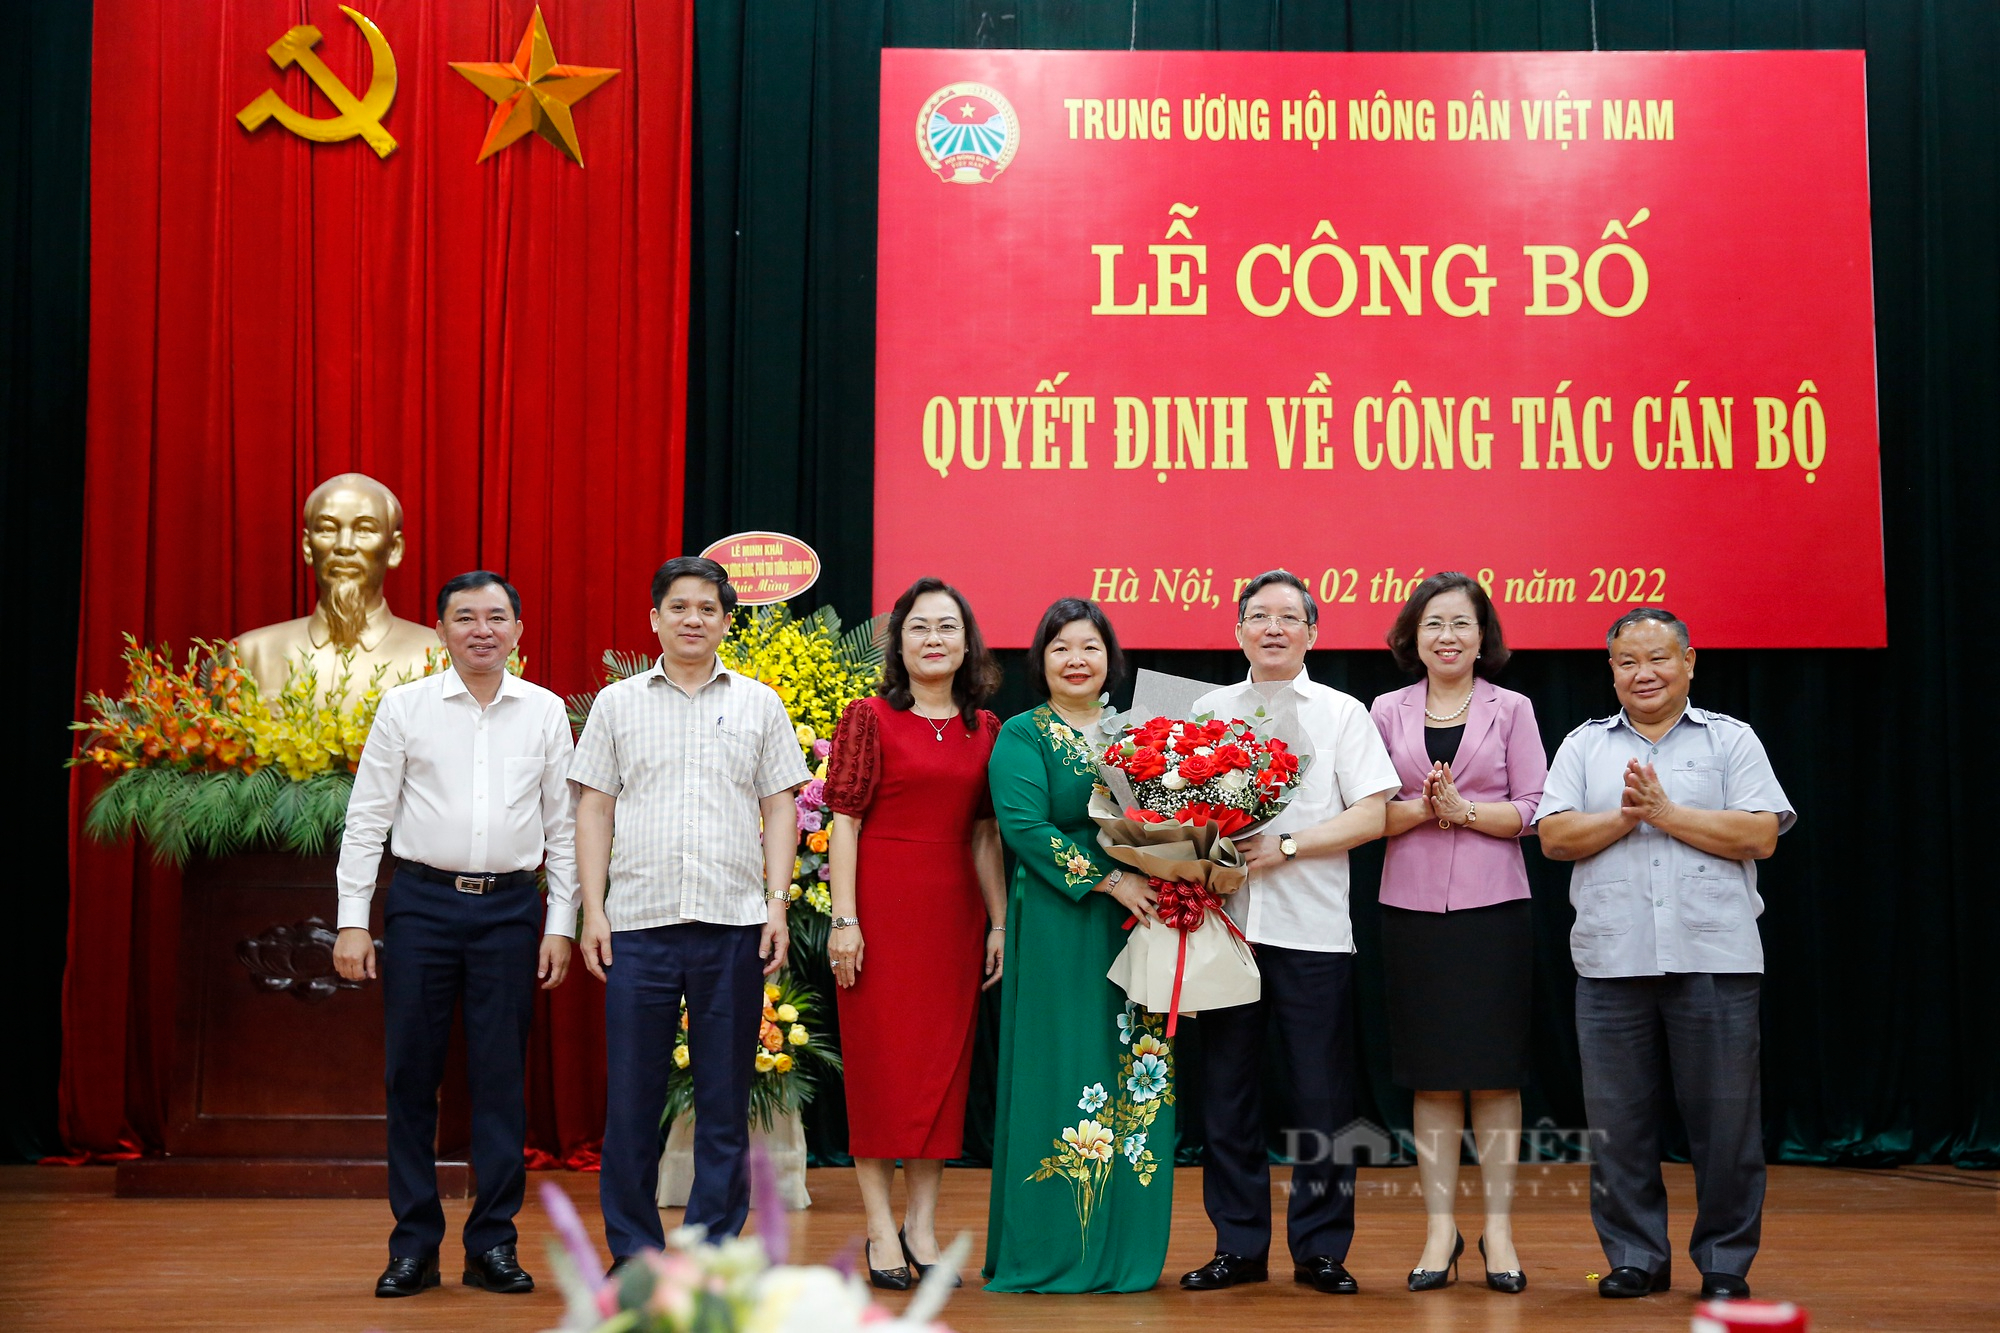 Hình ảnh Lễ công bố Quyết định về công tác cán bộ tại Trung ương Hội Nông dân Việt Nam - Ảnh 8.